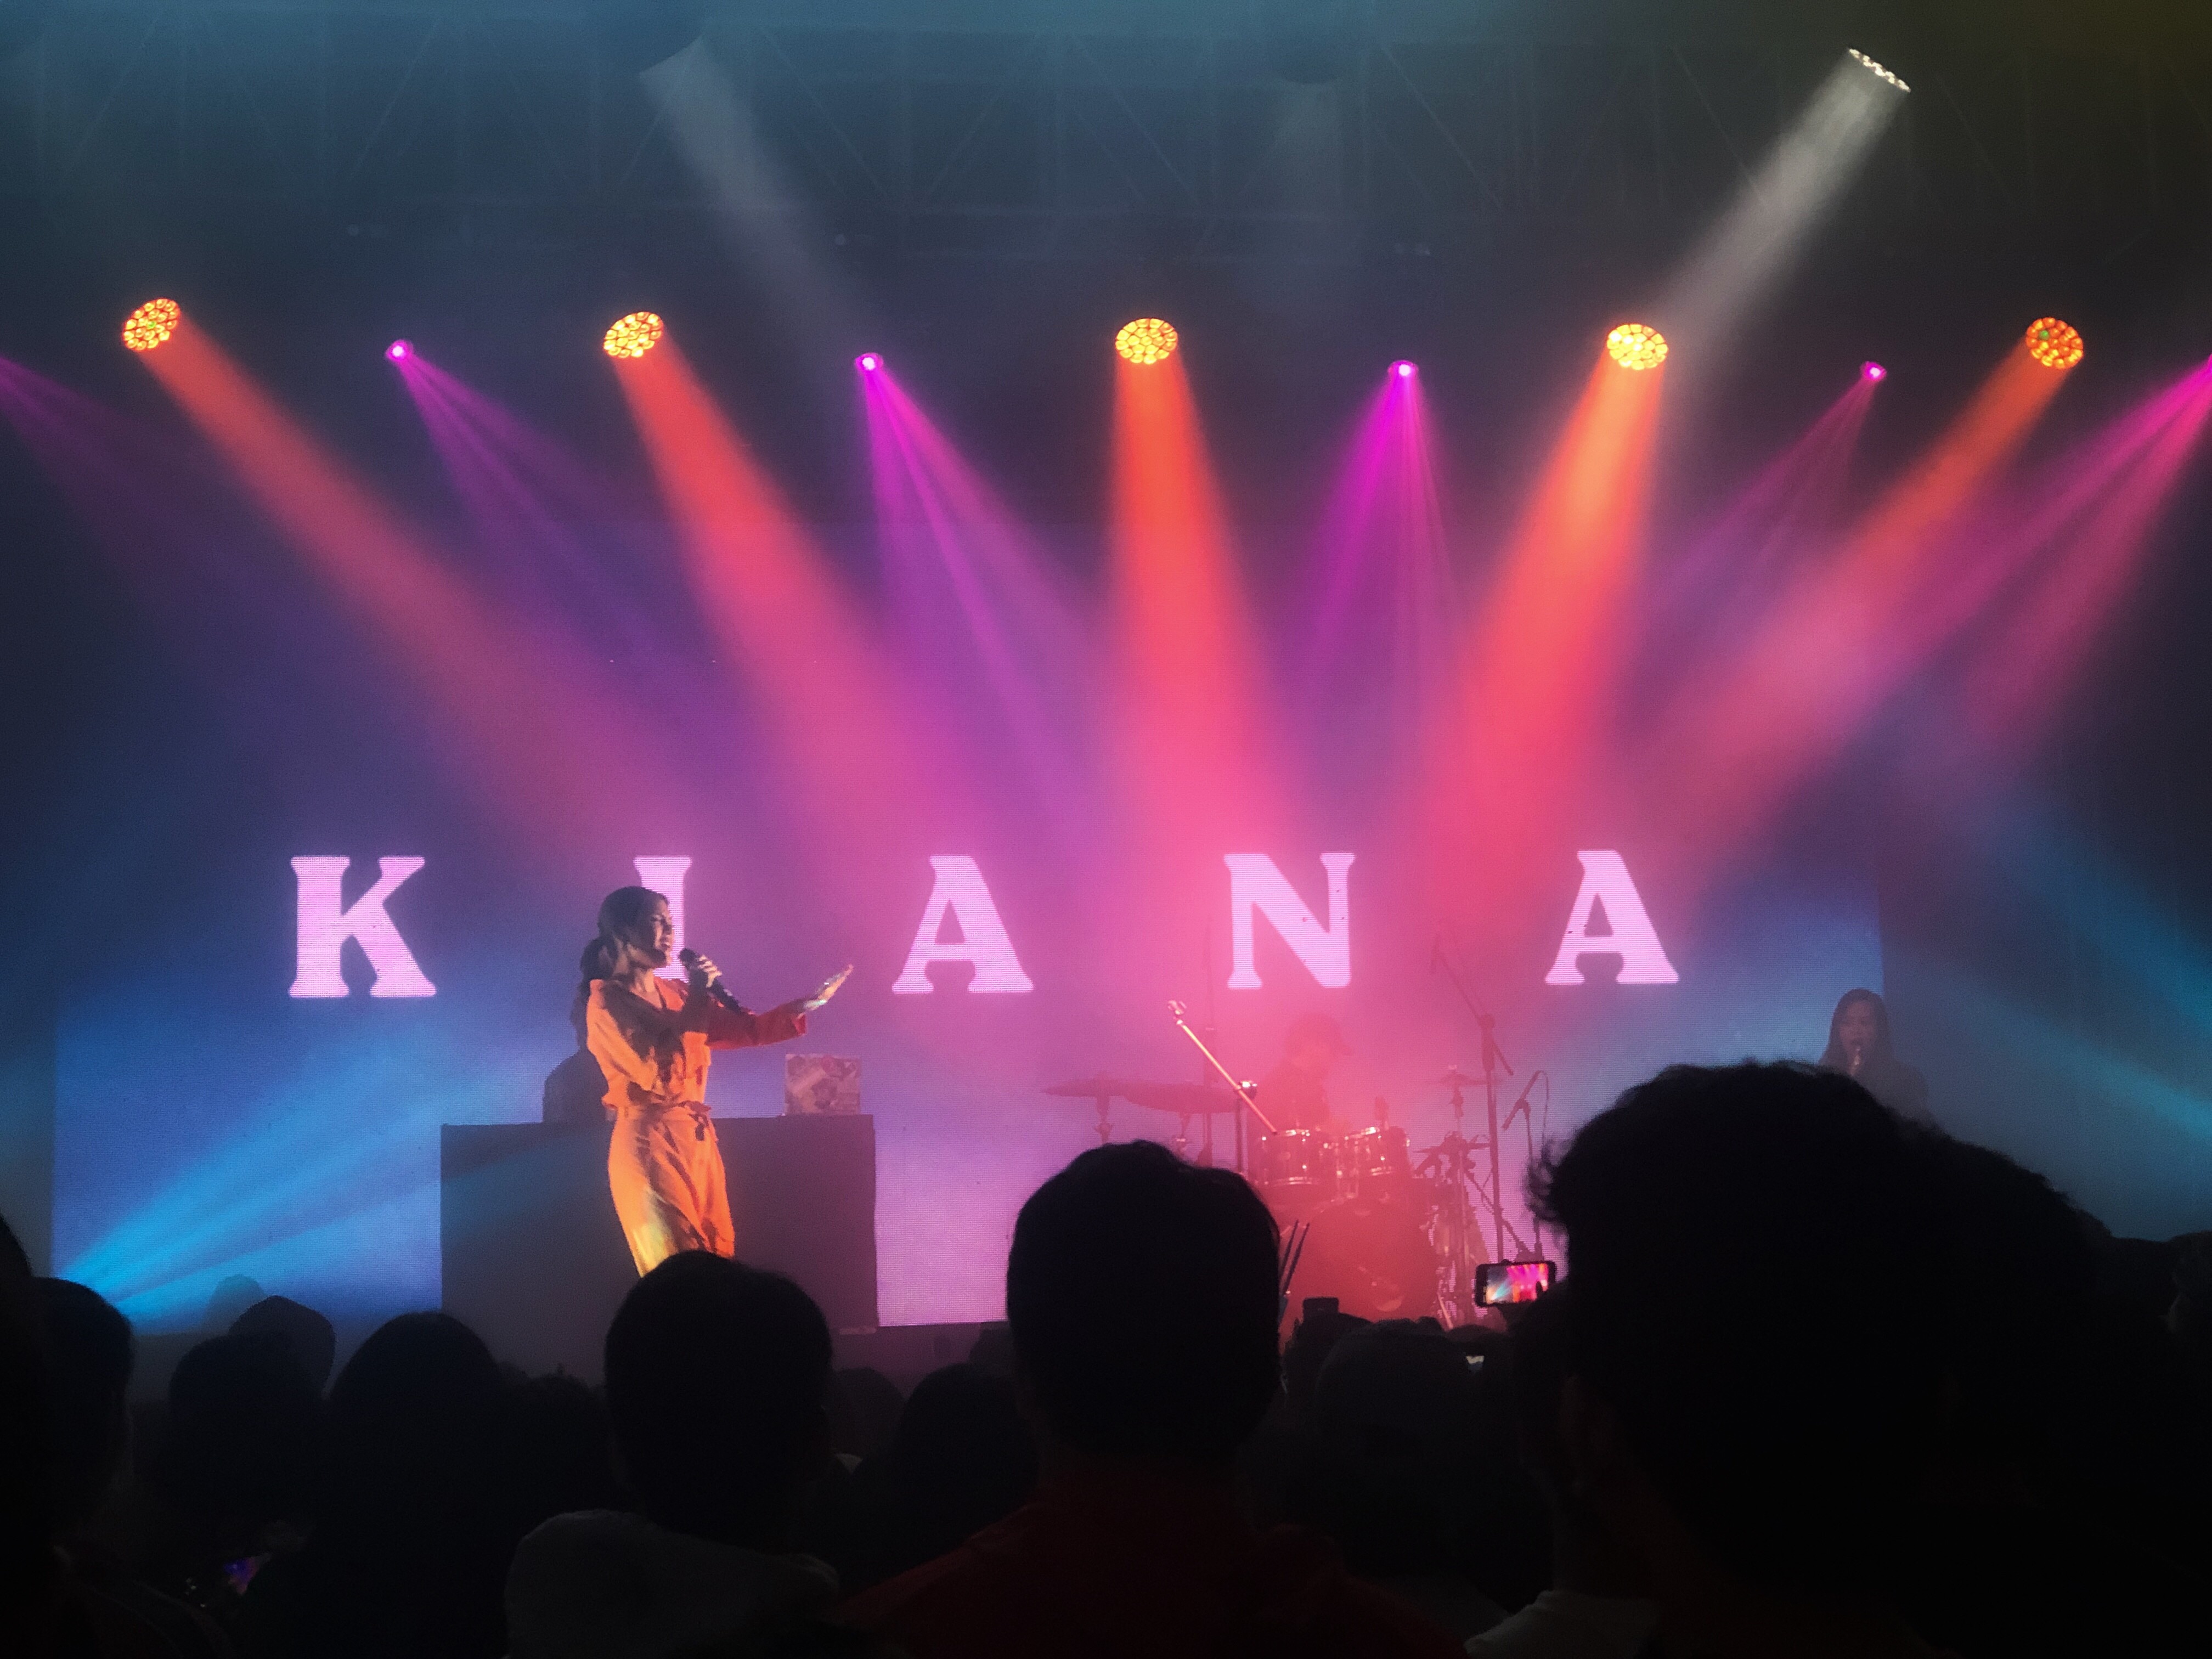 Concert recap: Time flies with flawless Kiana, emotional Jeremy Zucker 1